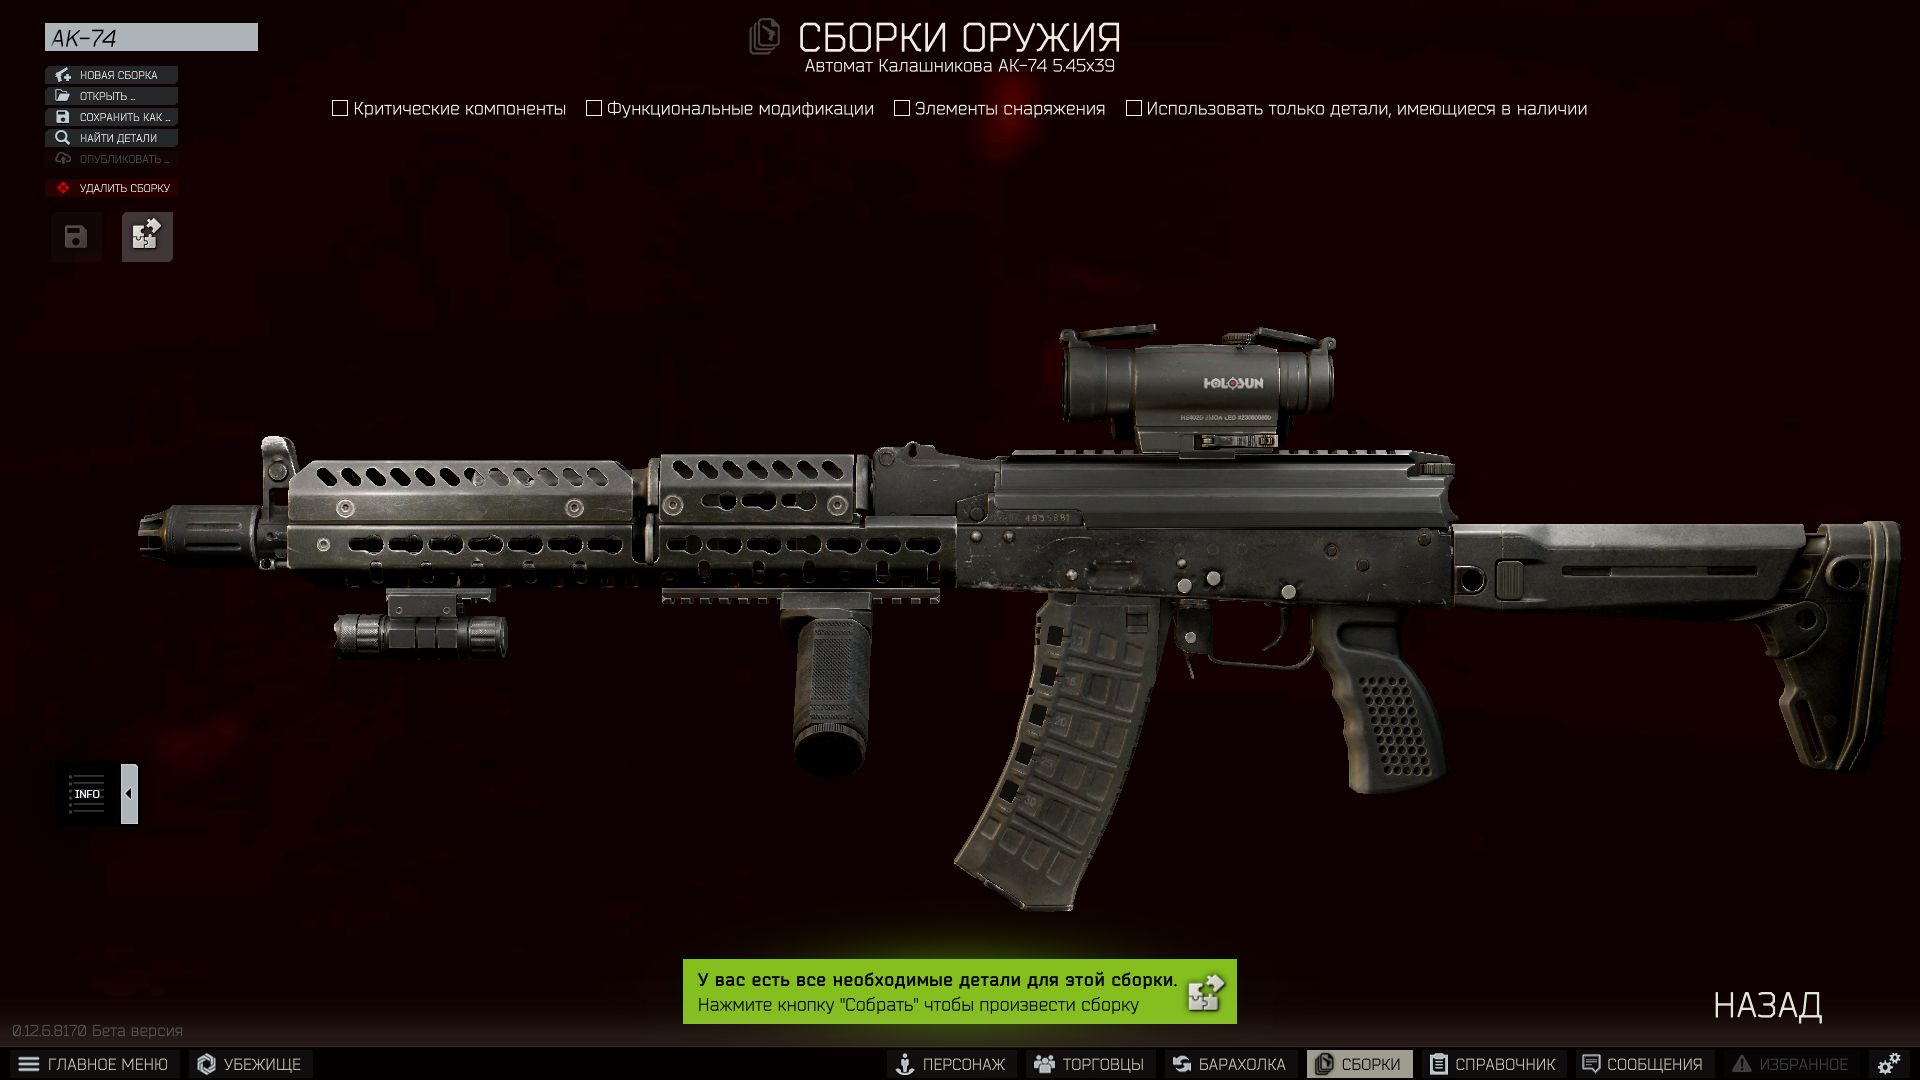 Это тот же AK-74, но в другом &laquo;обмундировании&raquo;.
Скриншот: Cybersport.ru